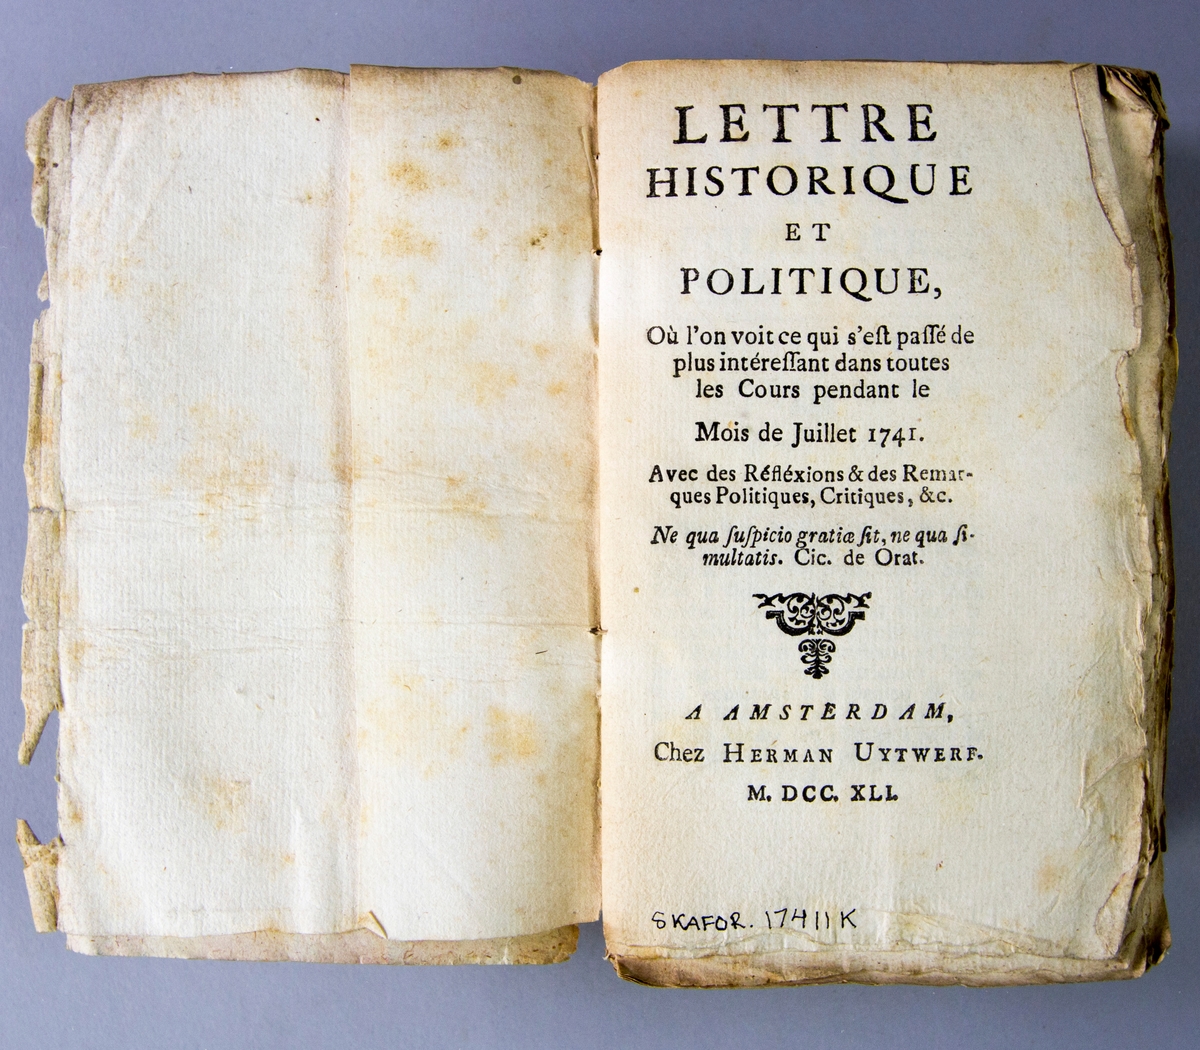 Bok, häftad, "Lettre historique et politique", tryckt 1741 i Amsterdam. Pärmar av marmorerat papper, blekt rygg med påklistrade etiketter med titel och samlingsnummer. Oskuret snitt.